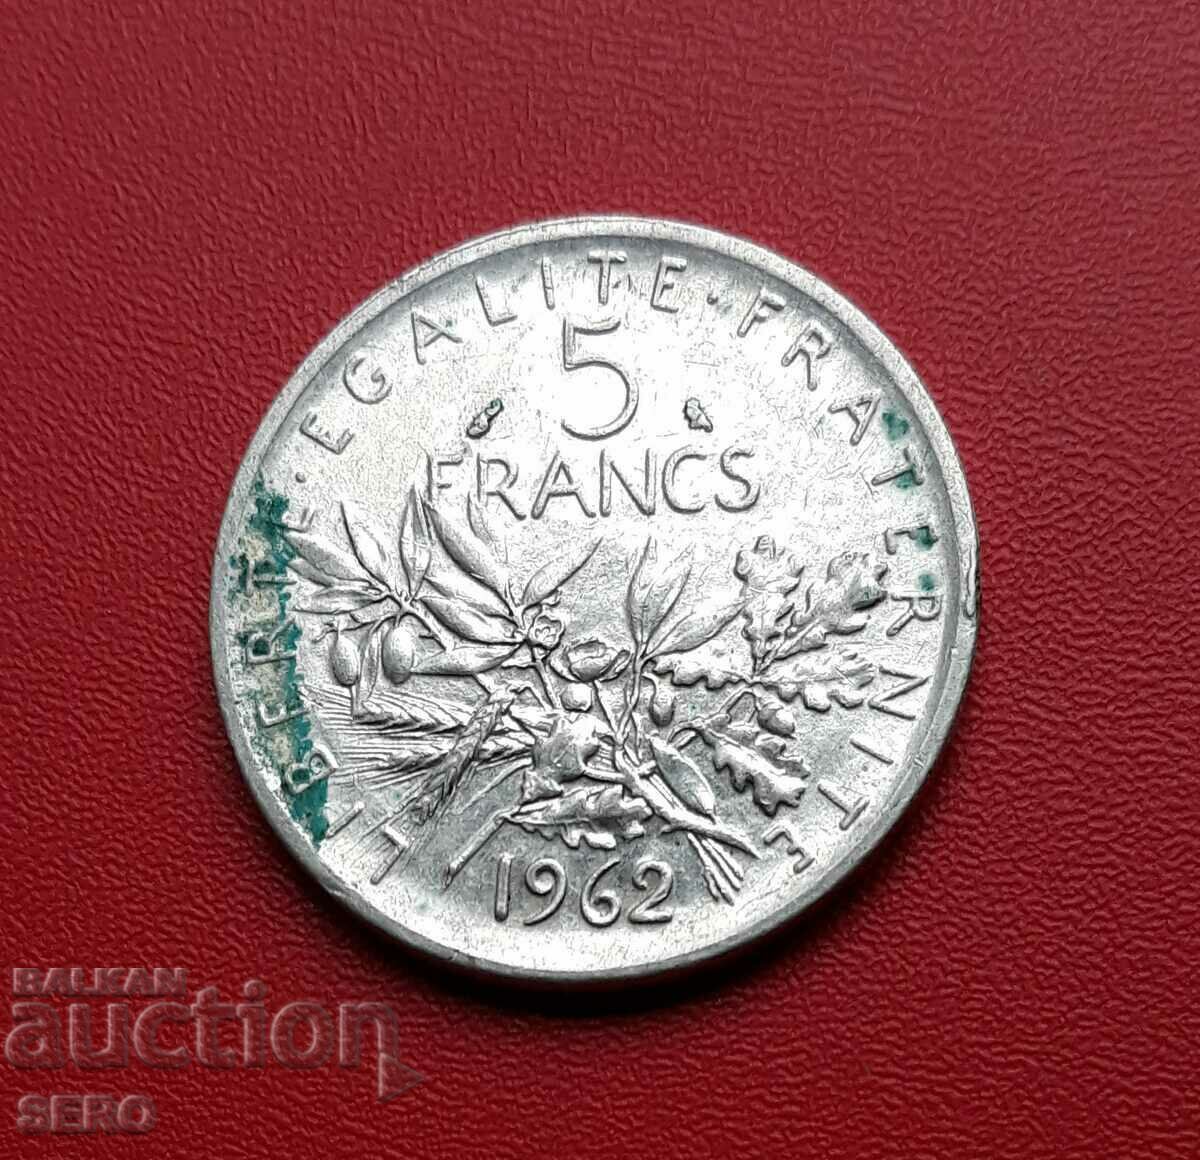 France-5 francs 1962-silver